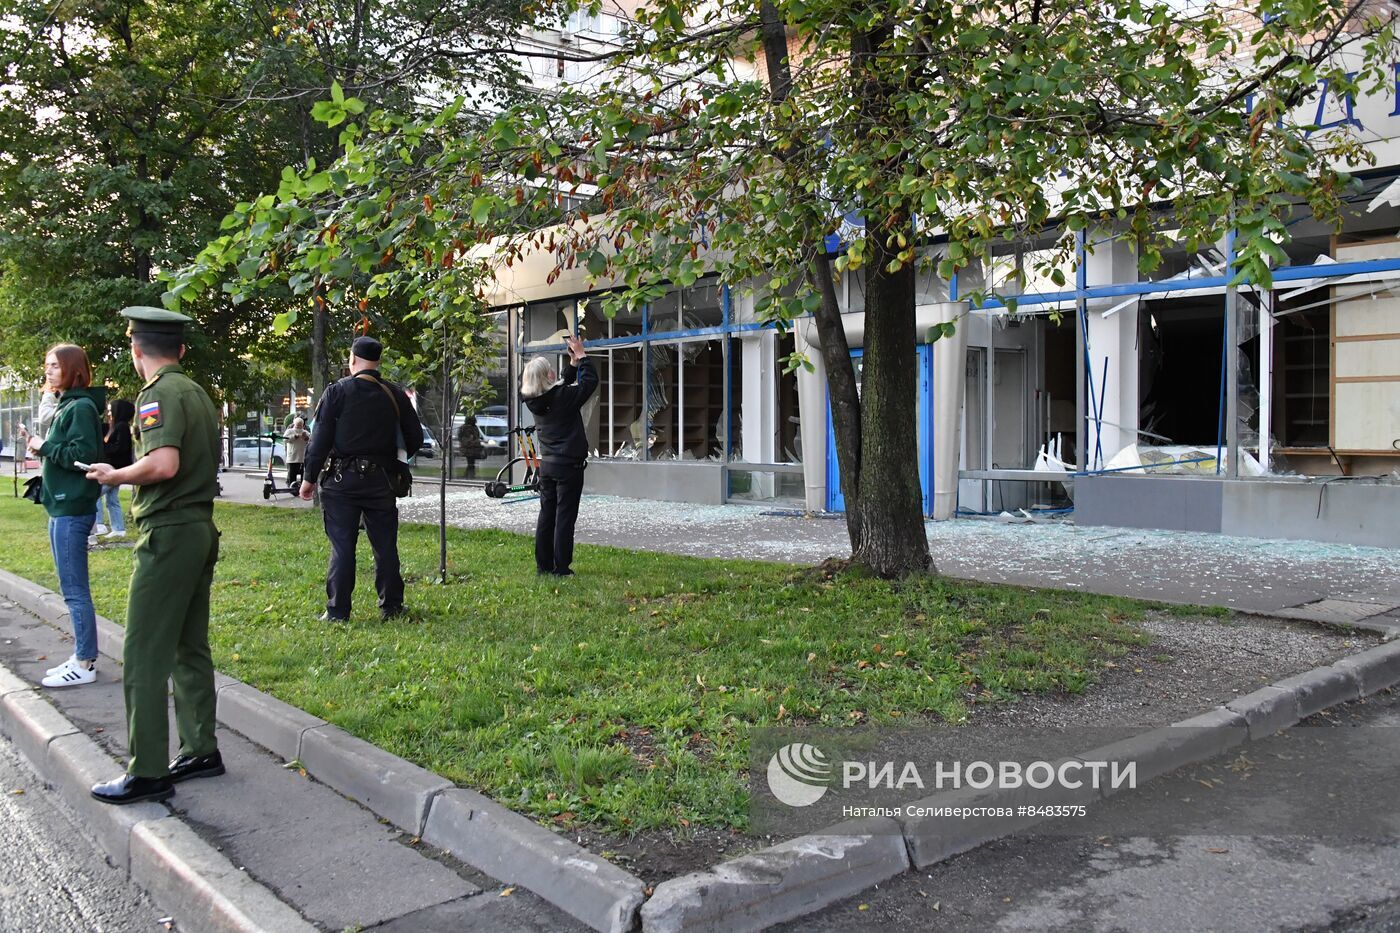 بالفيديو .. المشاهد الأولى لمحاولة هجوم مسيرتين أوكرانيتين على المباني بموسكو